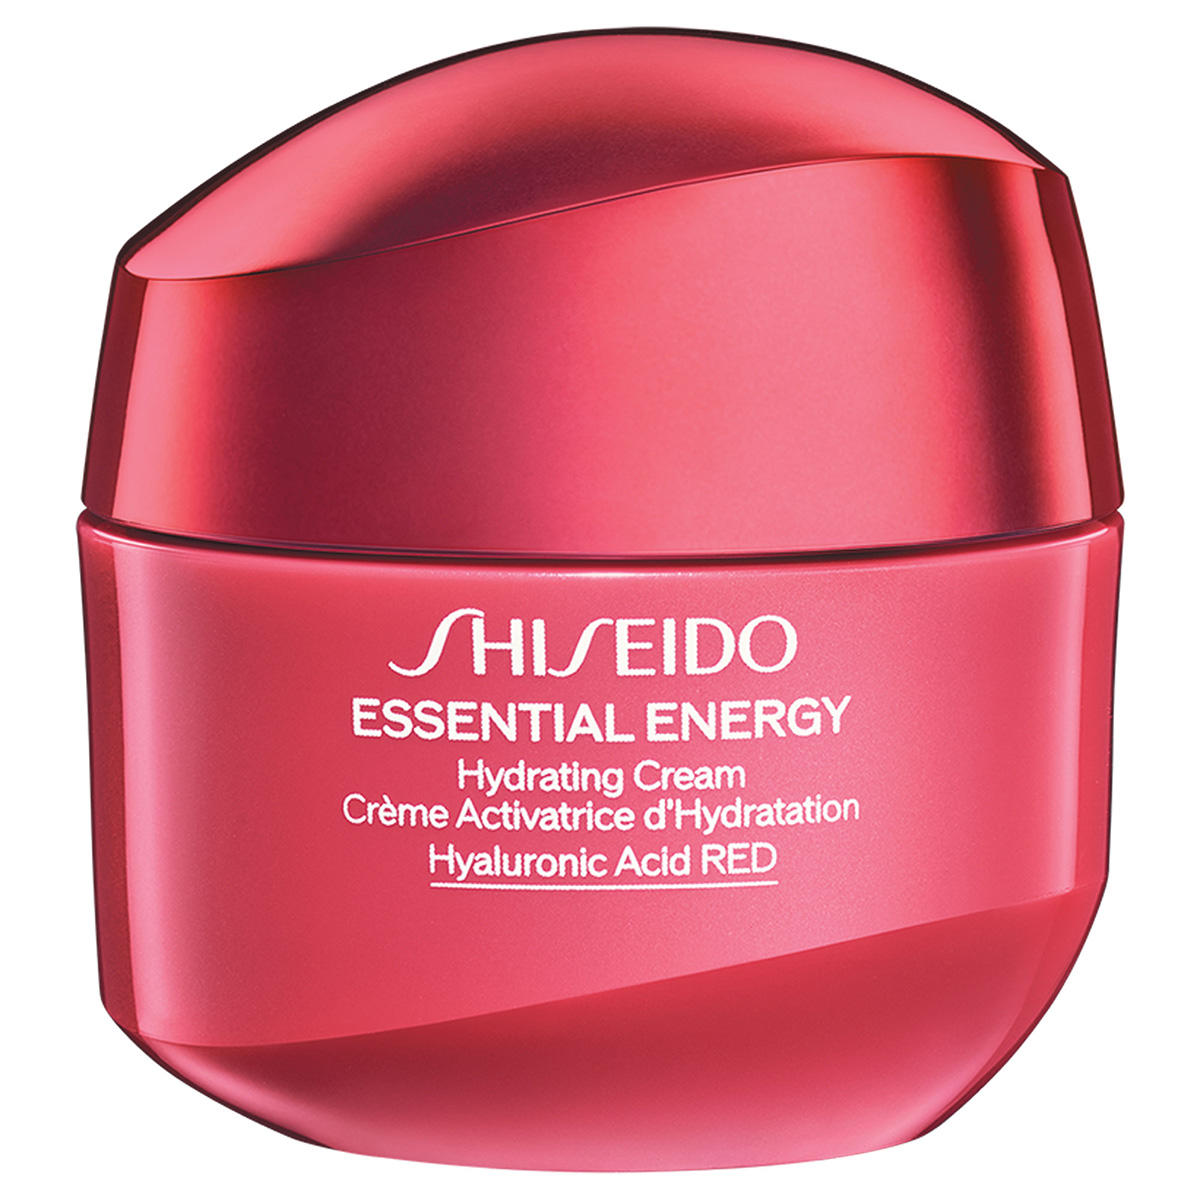 Shiseido Essential Energy Crème hydratante édition limitée 30 ml - 1